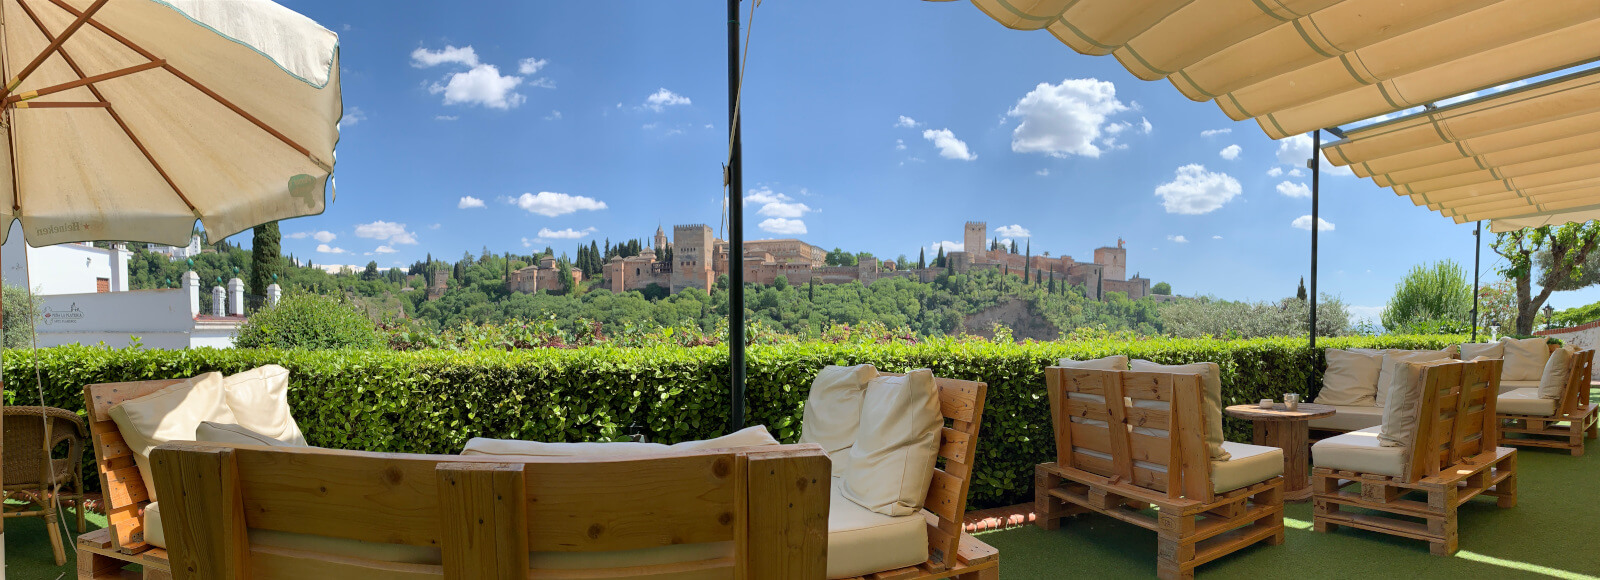 Restaurante Carmen Las Tomasas Albaicín views Alhambra Granada Romantic Paseo de los Tristes city center